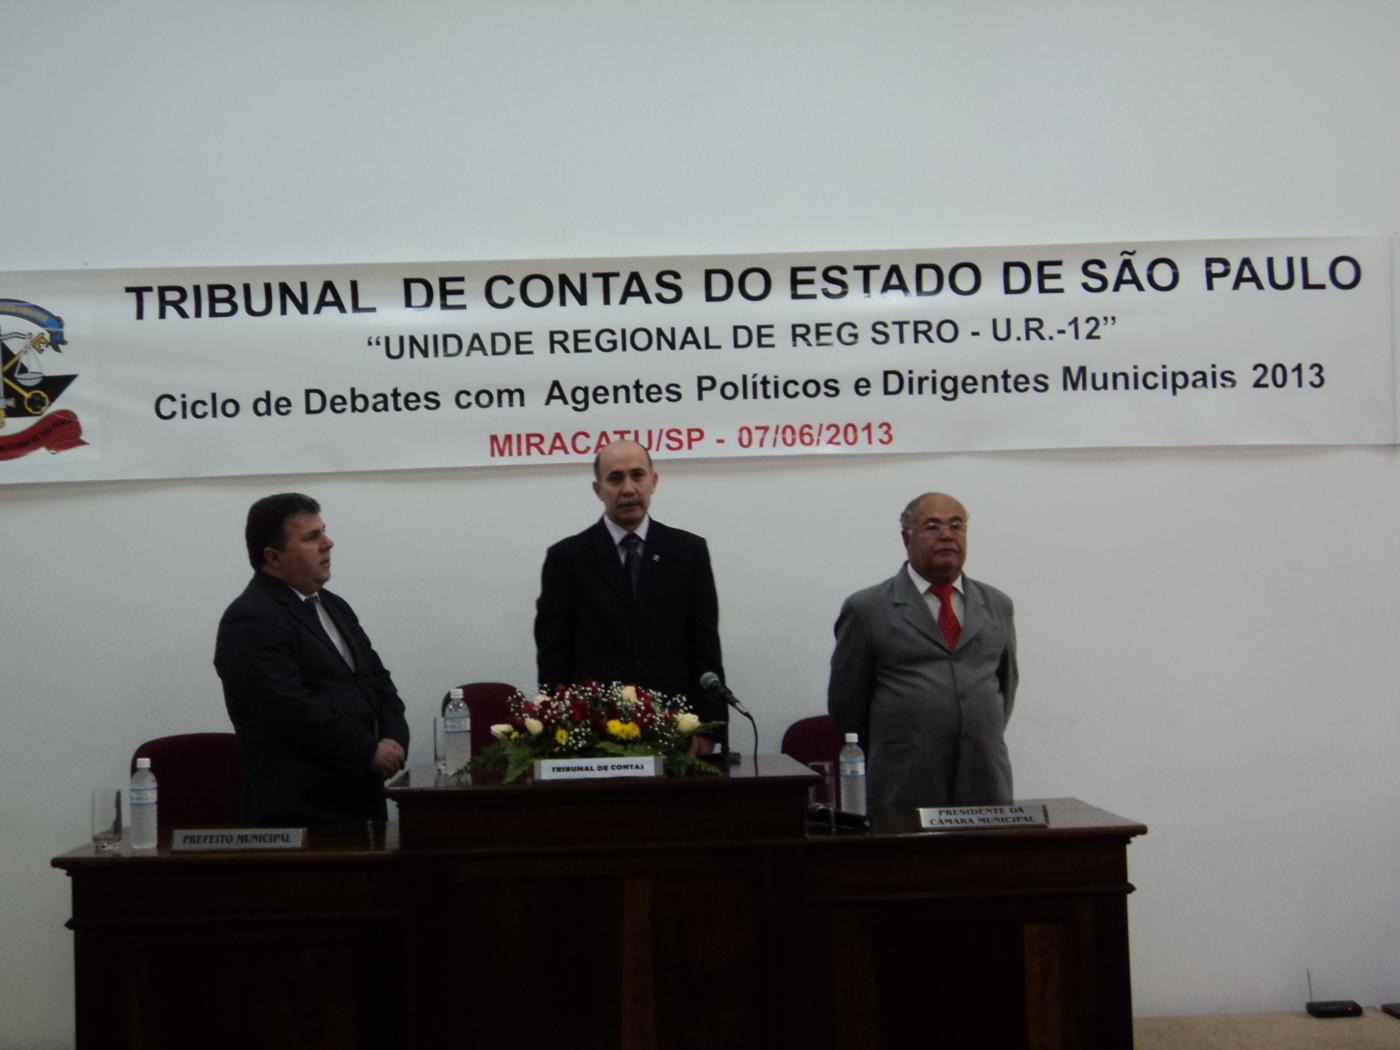 Composição da Mesa - Dr. João, Sr. Viveiros e Sr. José Fanes